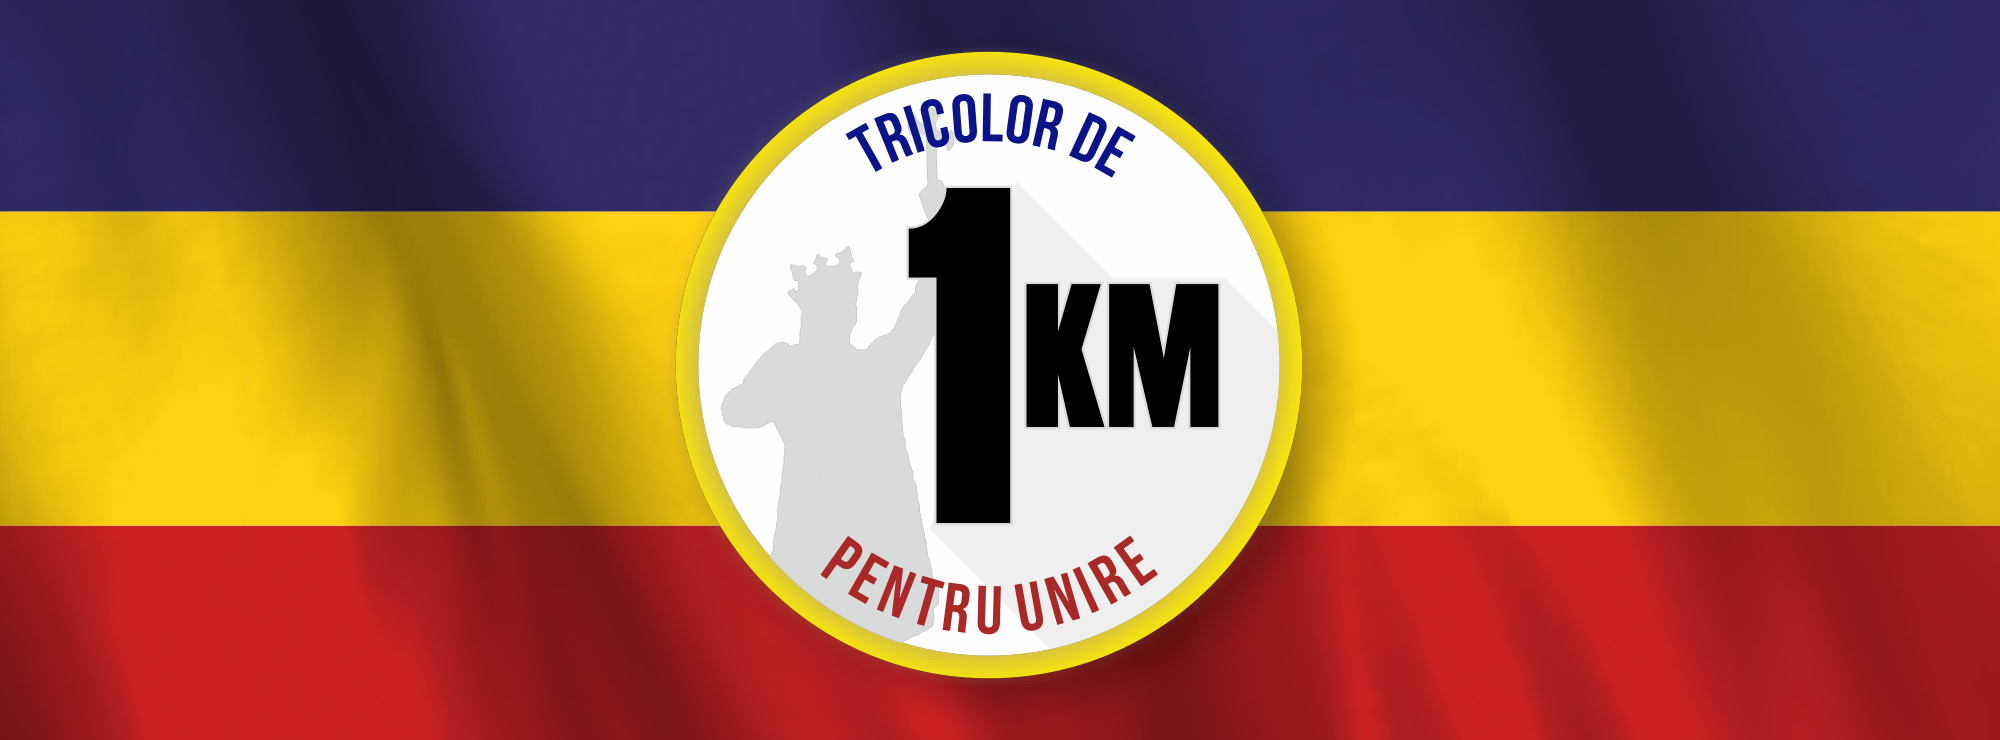 1-km-tricolor